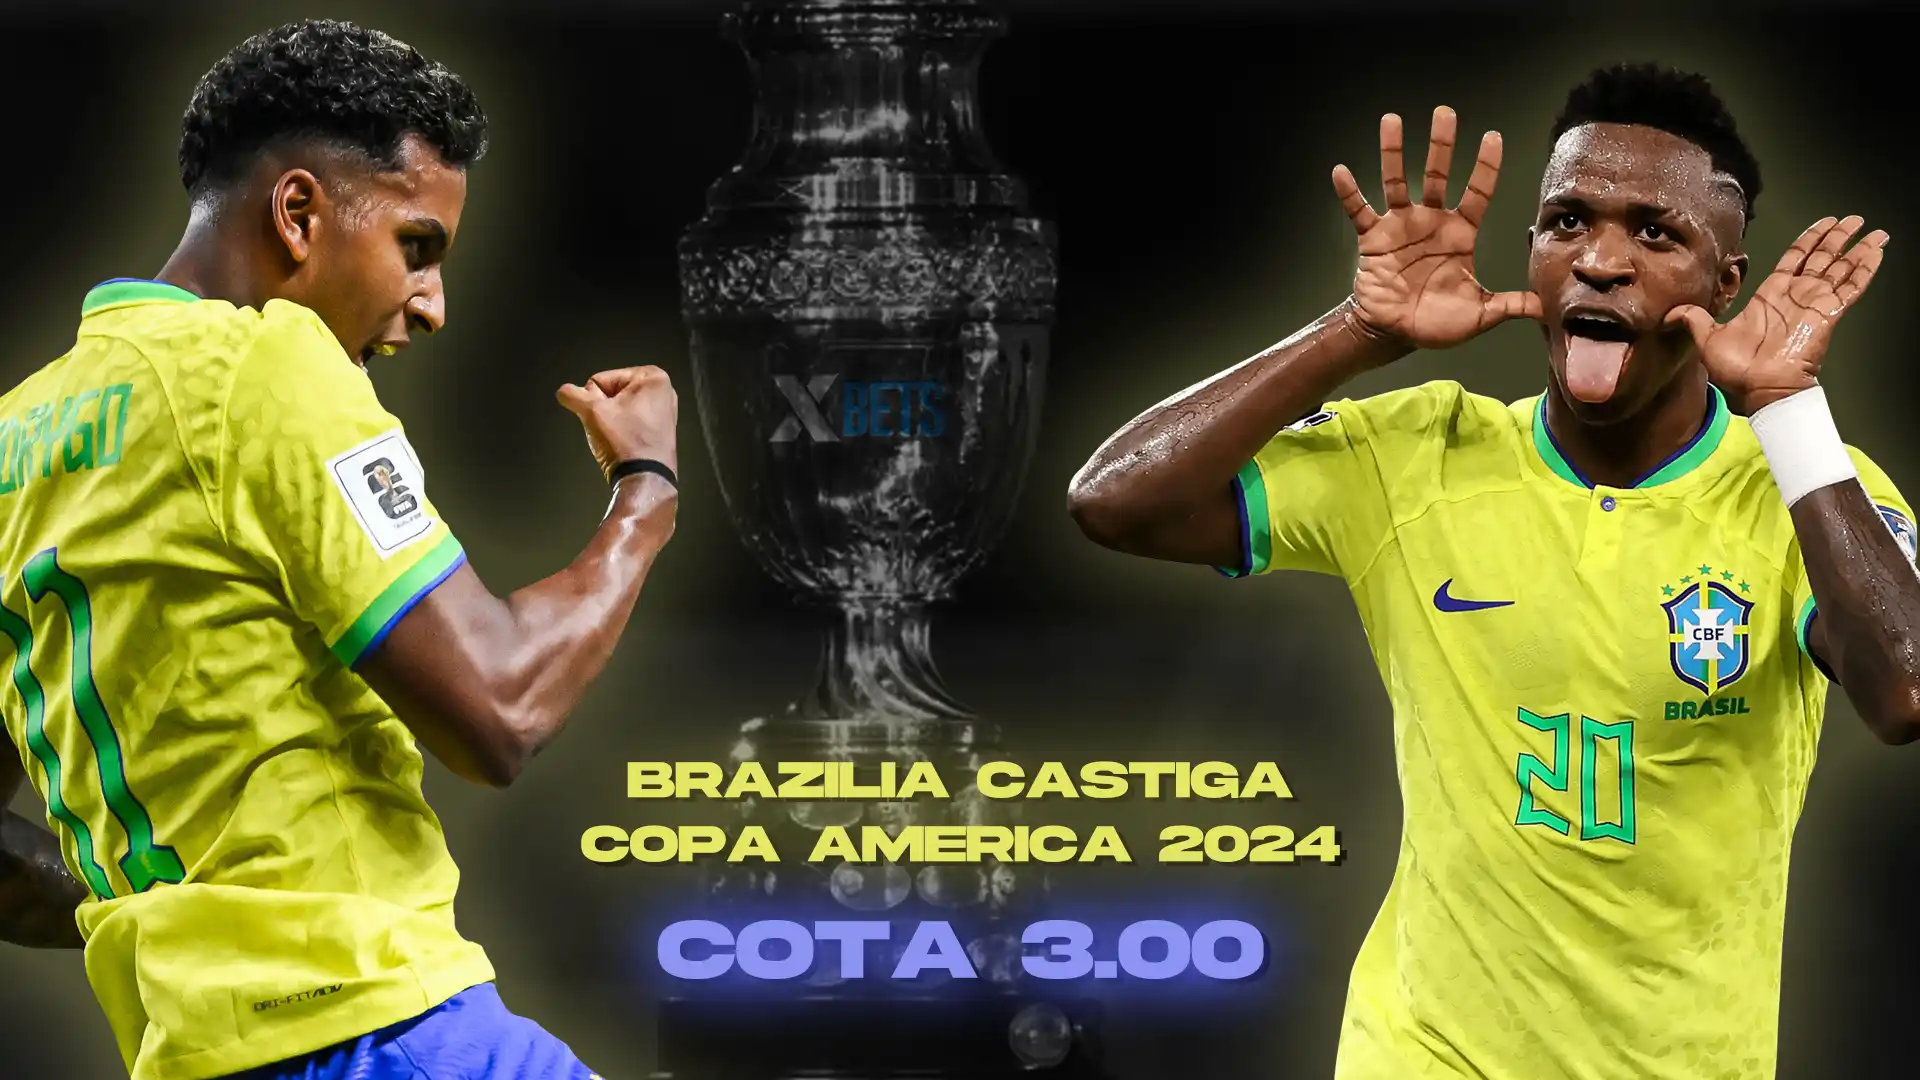 Cota Brazilia castiga Copa America 2024 